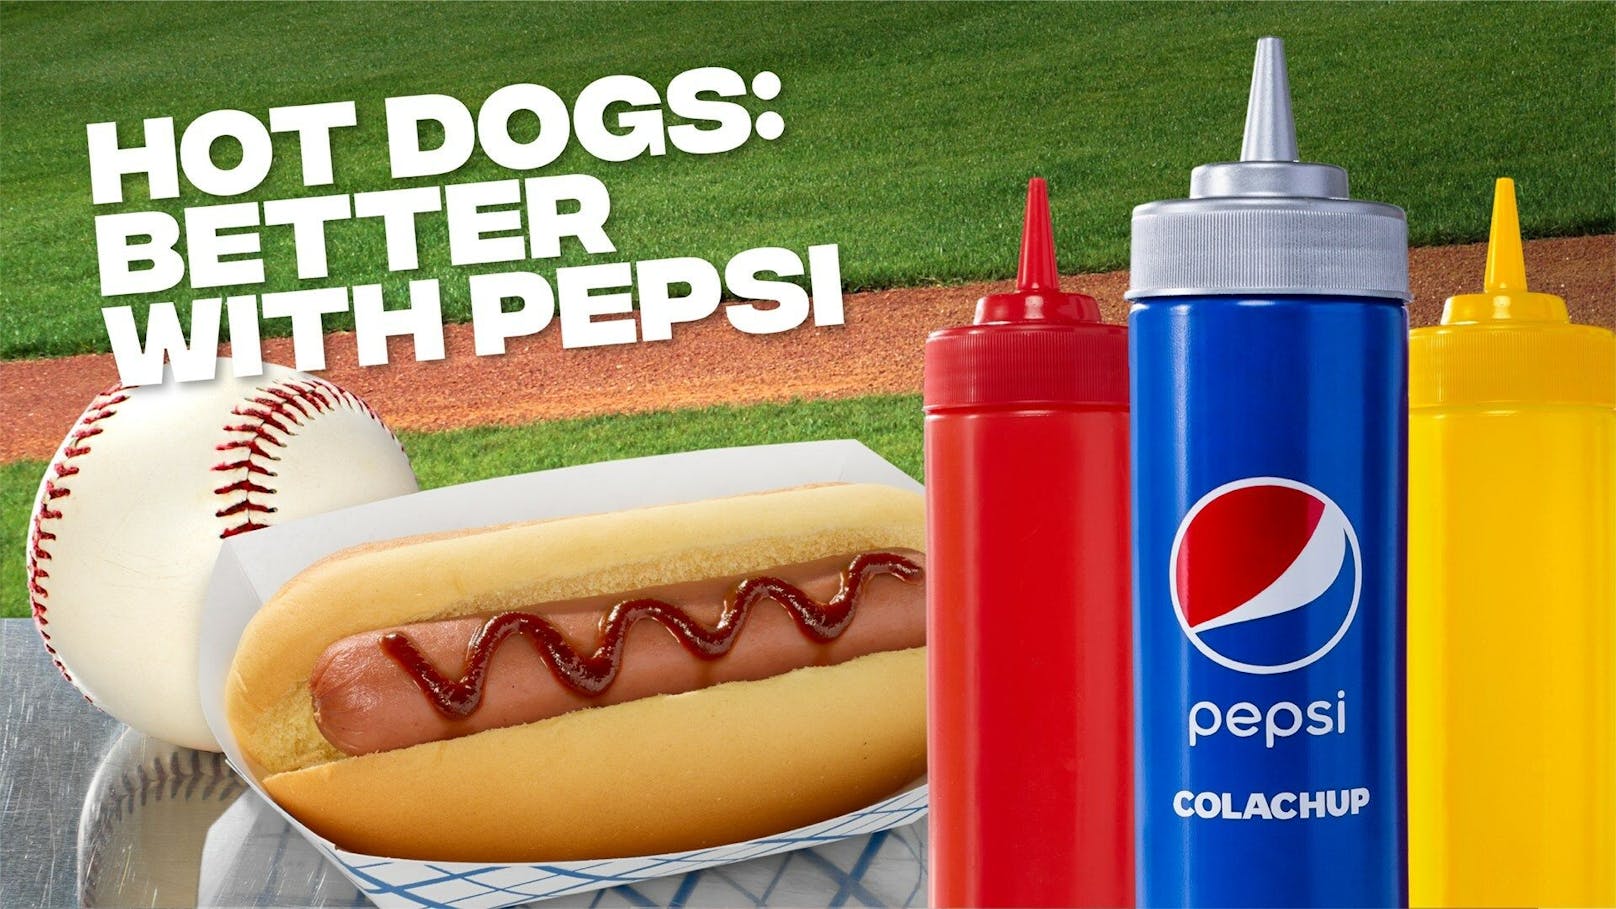 "Wir haben Pepsi Colachup erfunden, um zu unterstreichen, wie gut Hot Dogs und Pepsi zusammenpassen", so Jenny Danzi, Senior Director bei Pepsi.